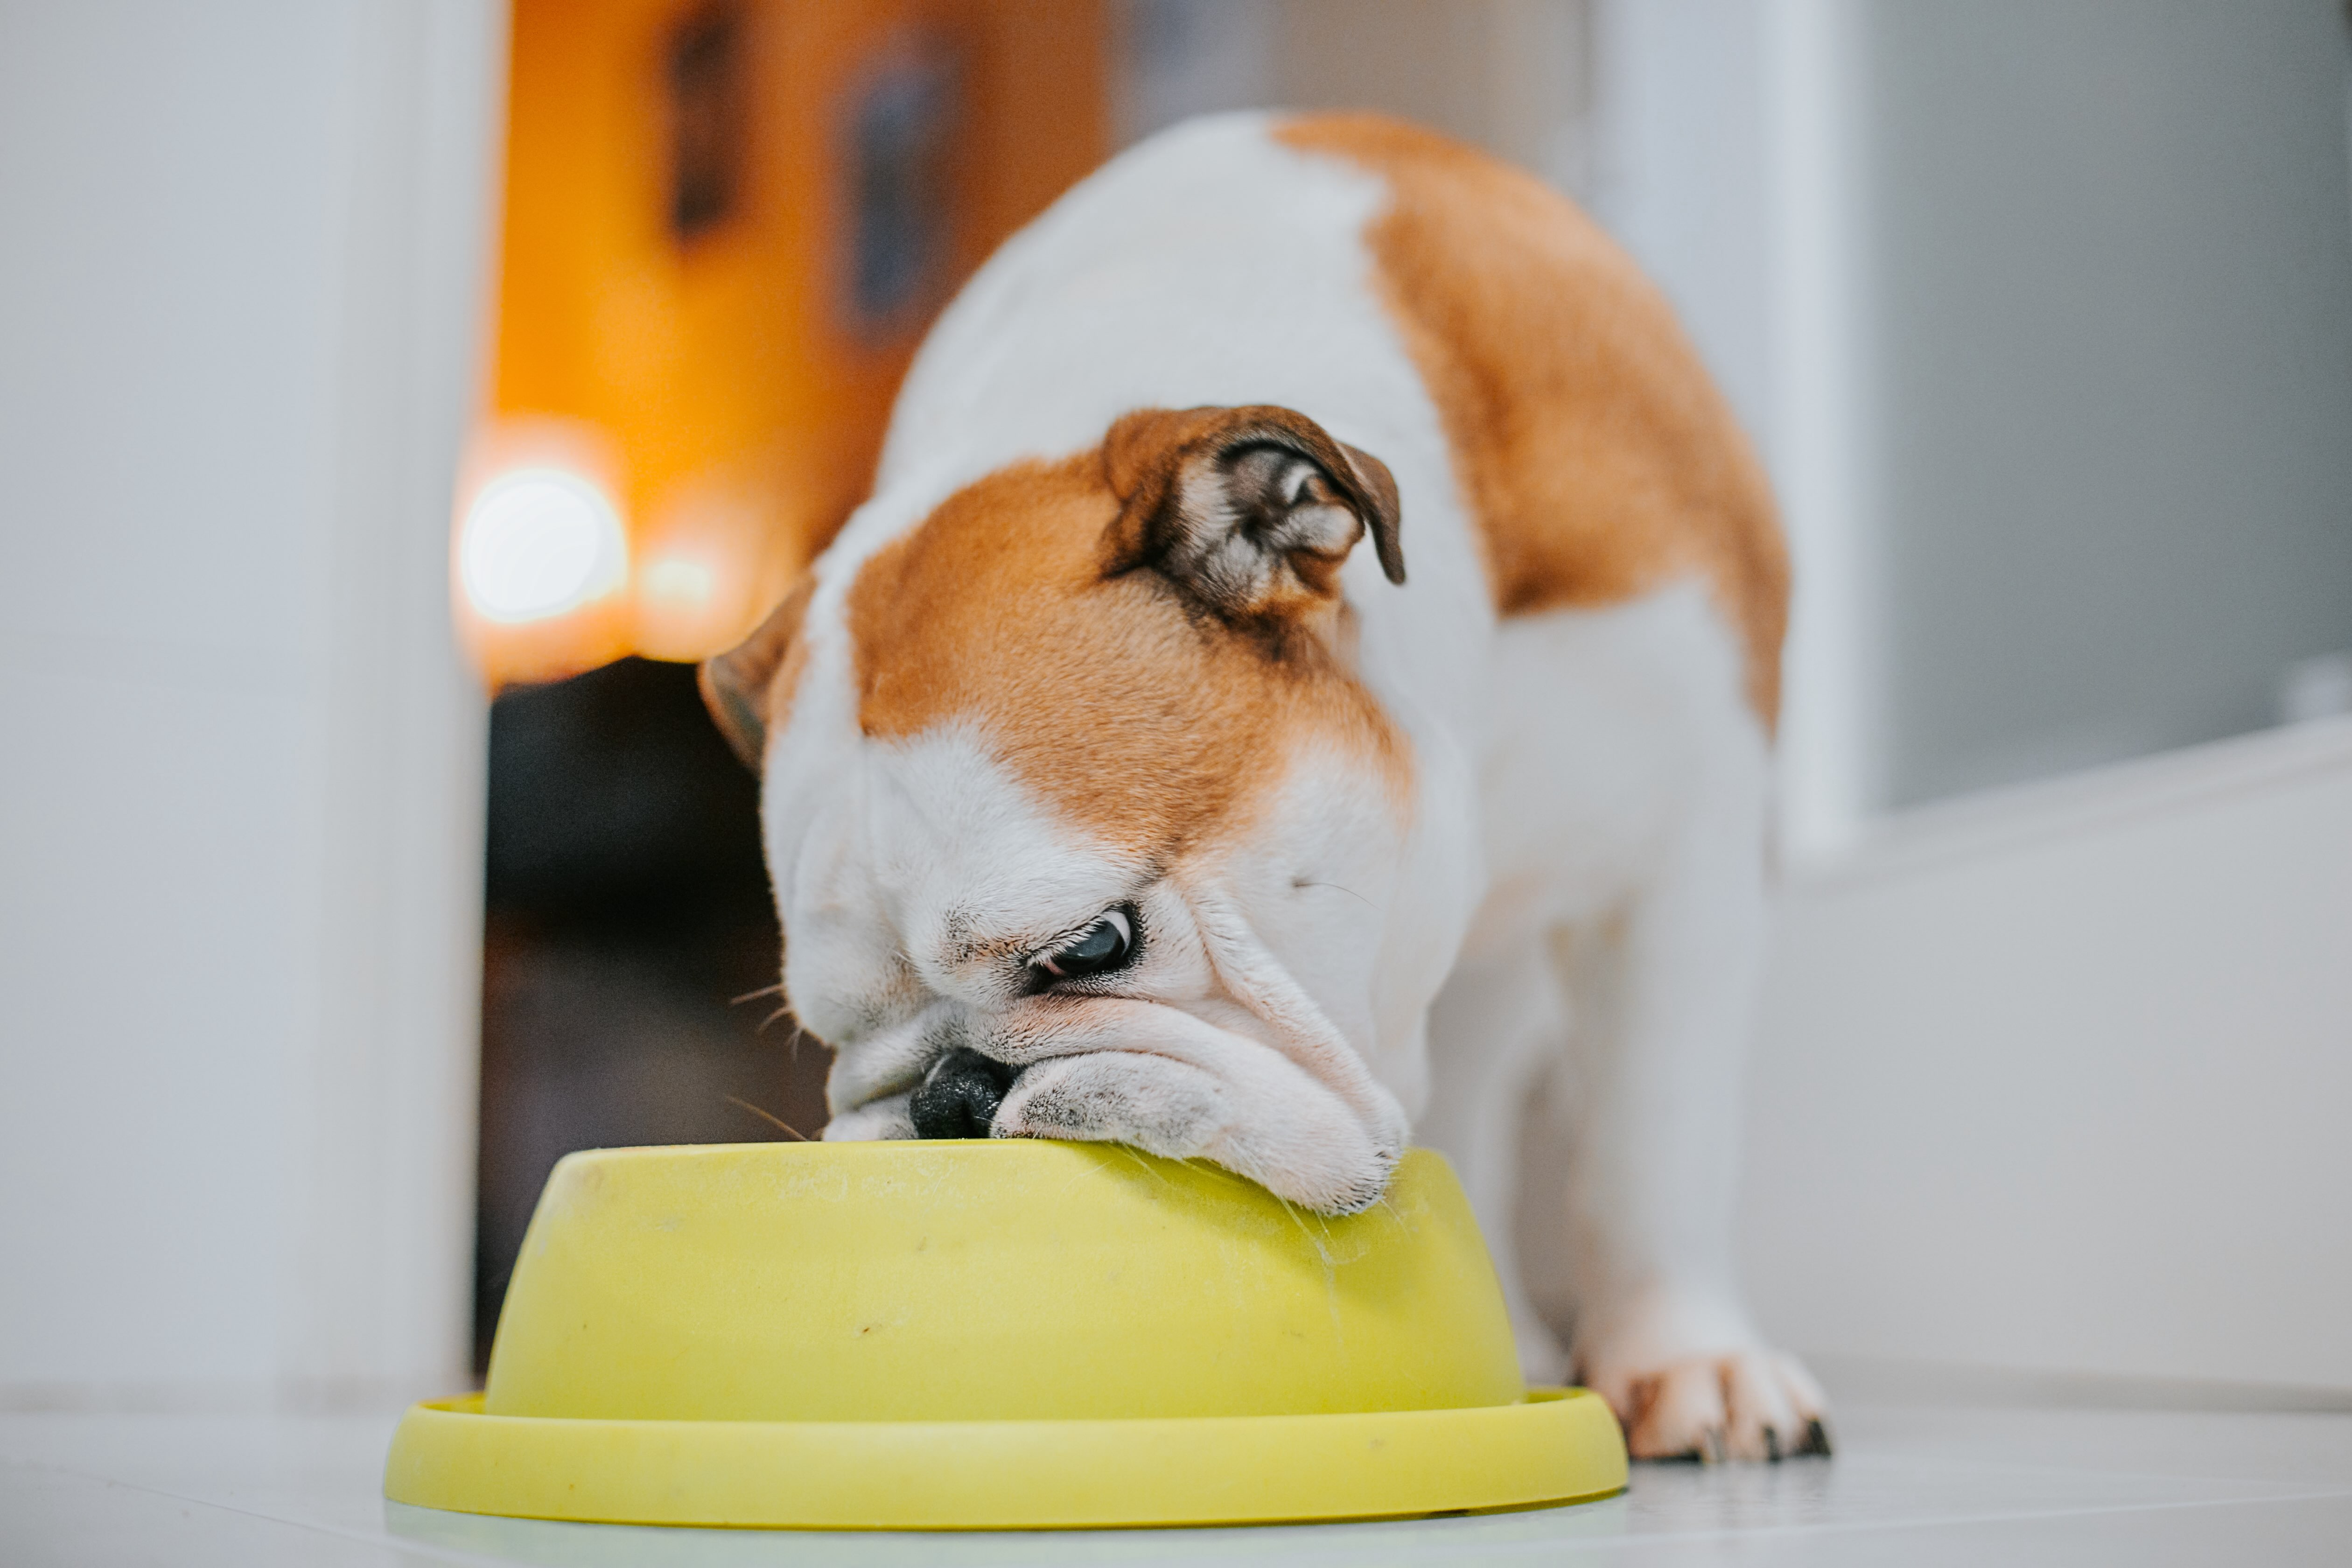 An English Bulldog eating from a bowl